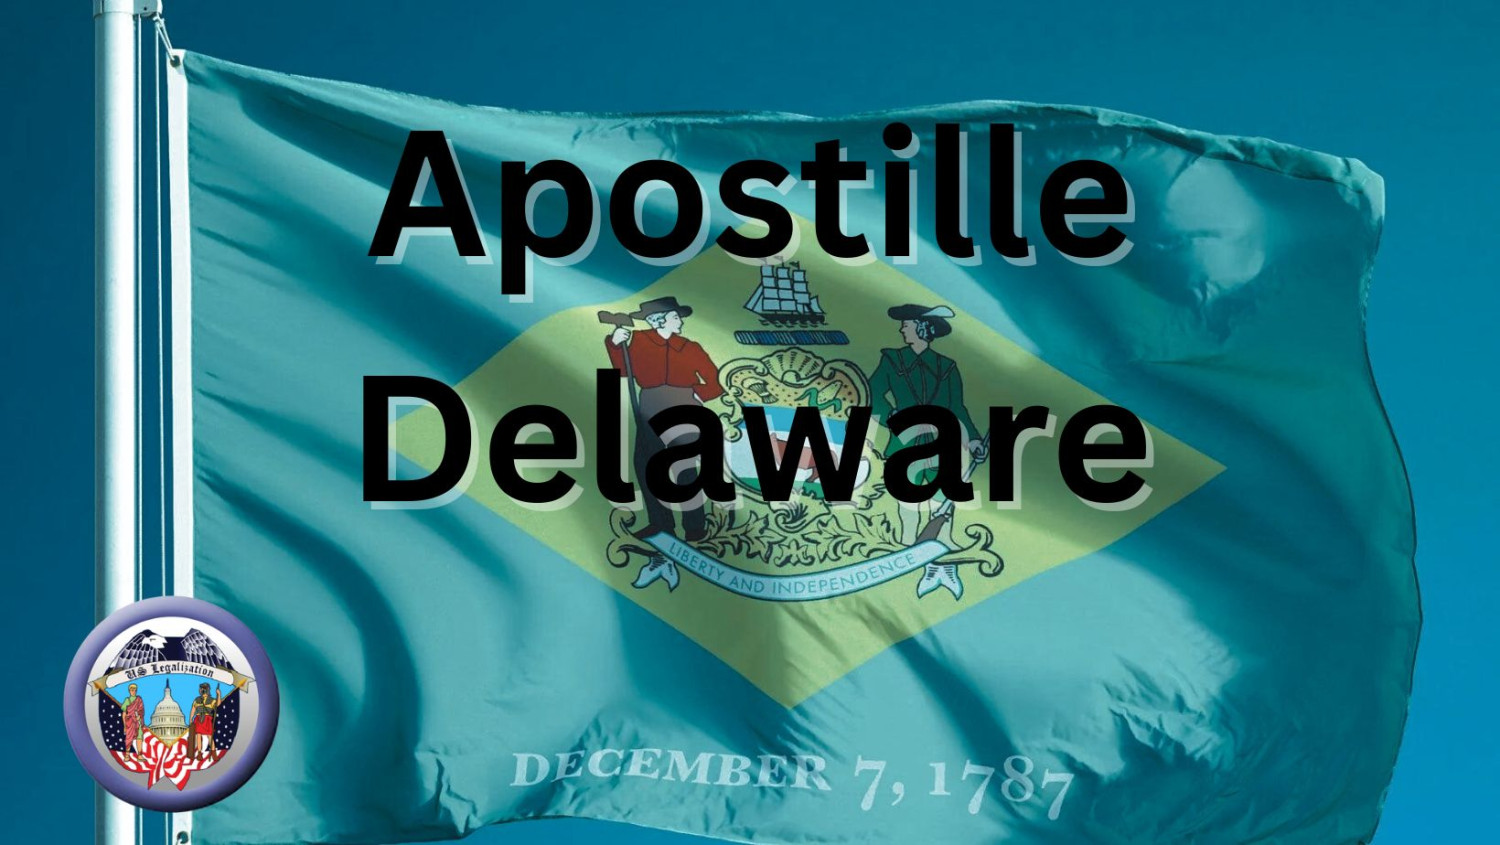 Apostille Delaware